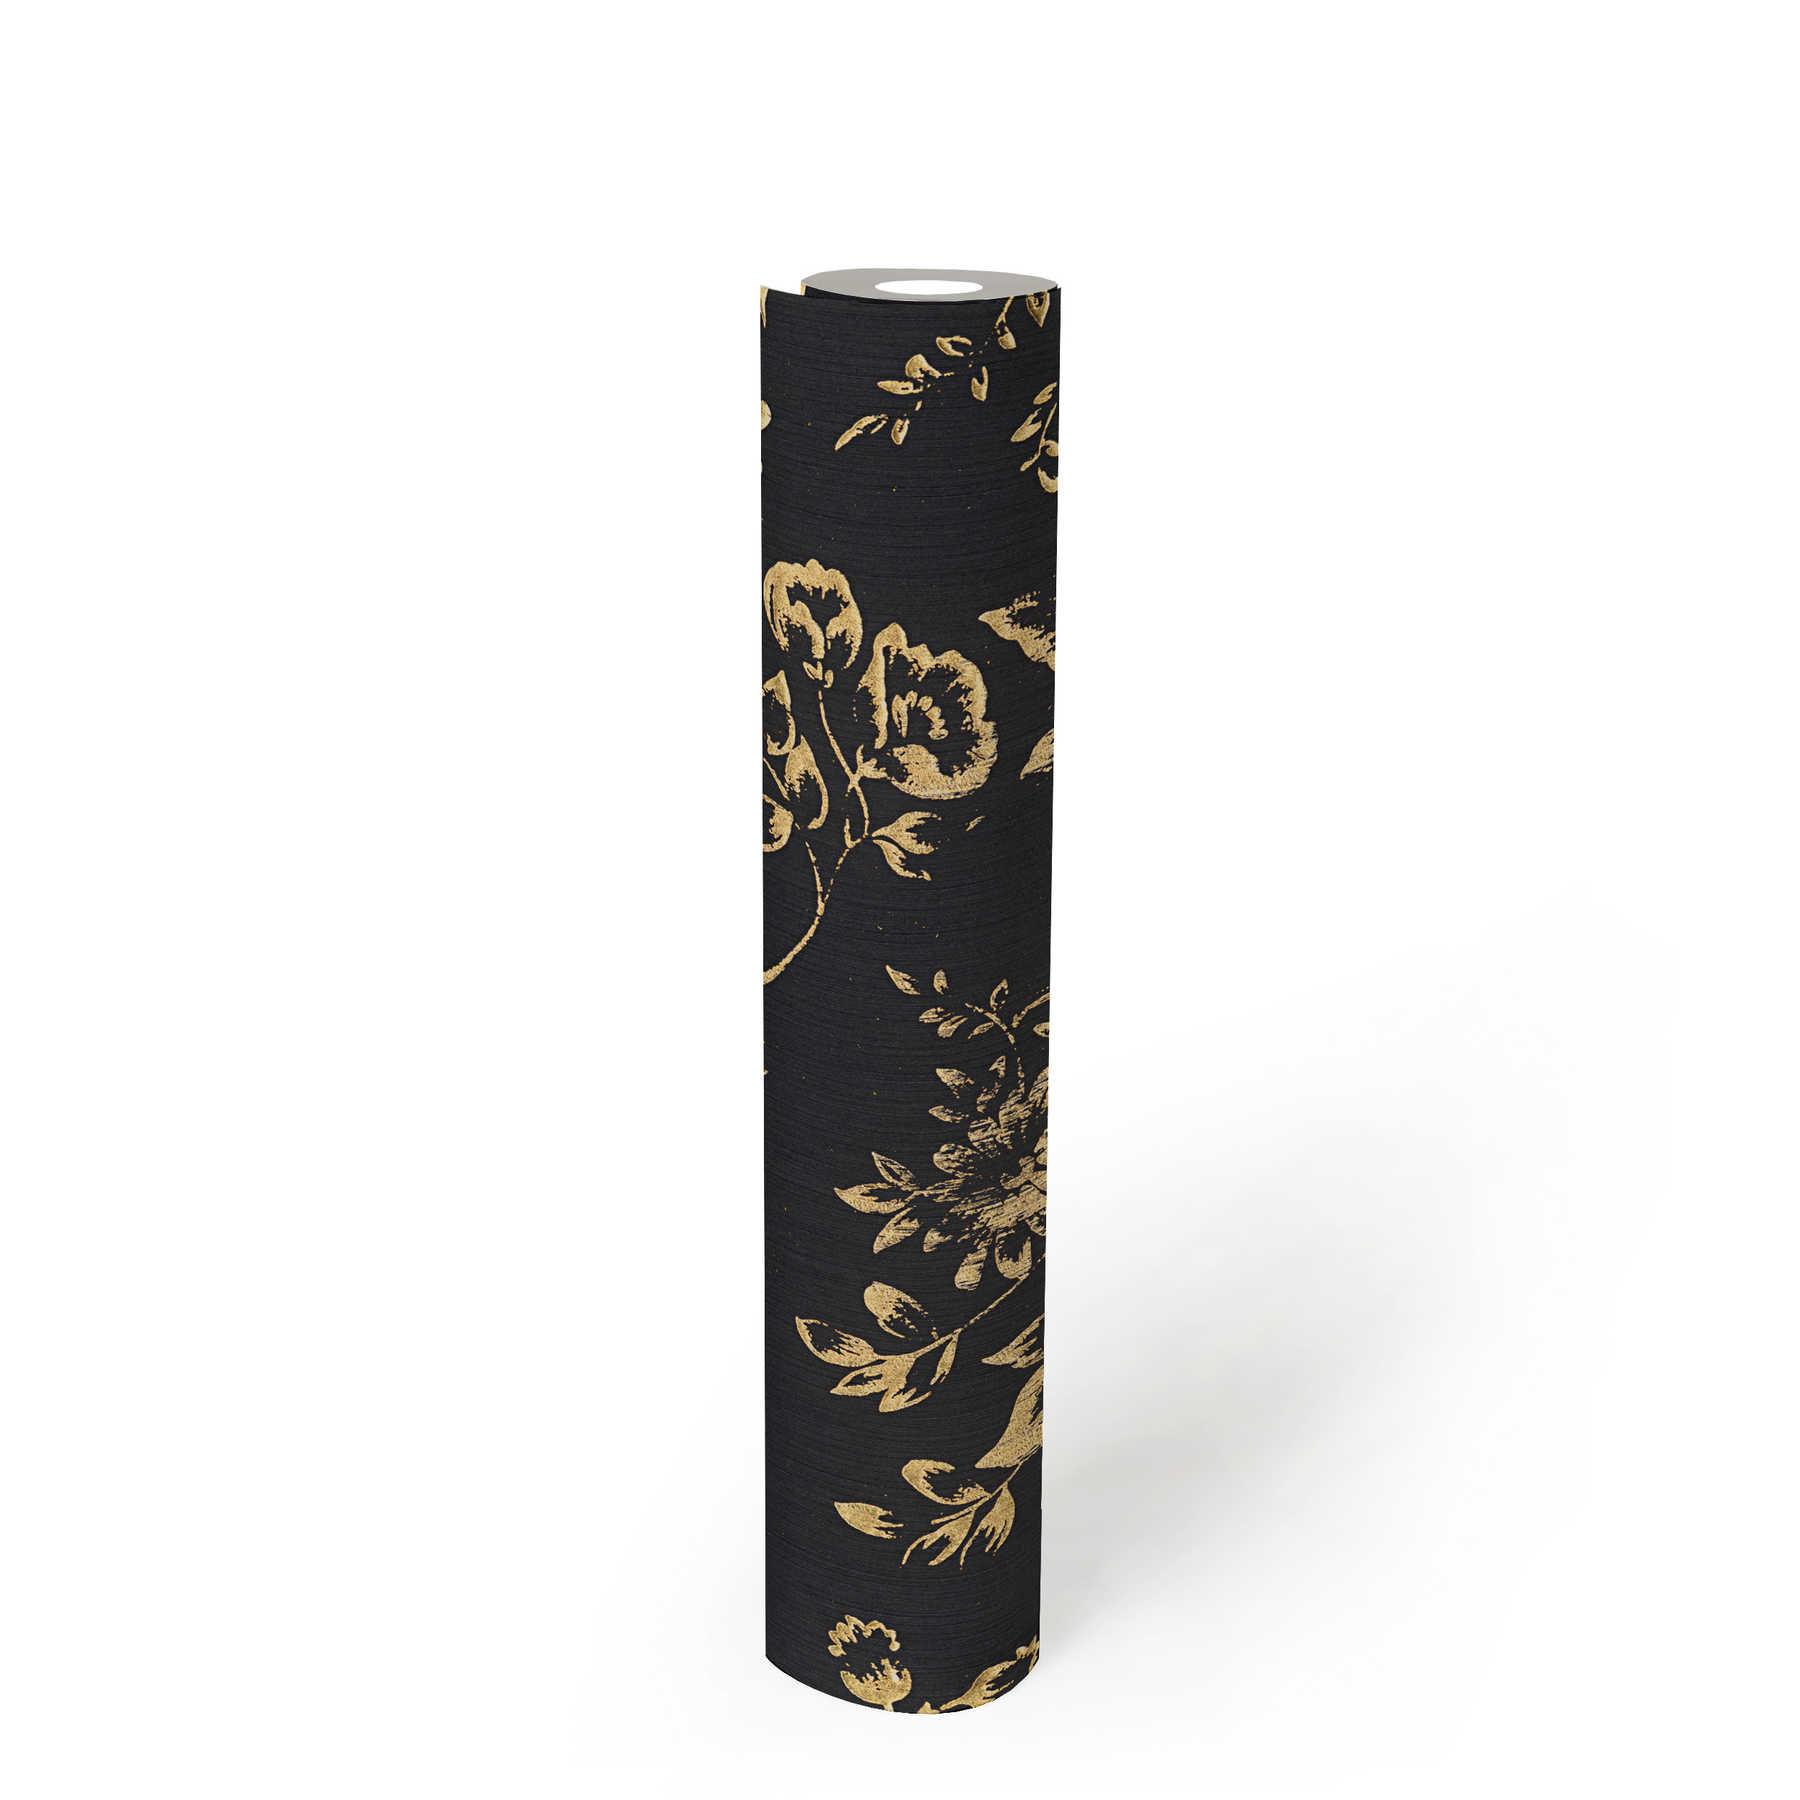             Papel pintado texturizado con motivos florales dorados - oro, negro
        